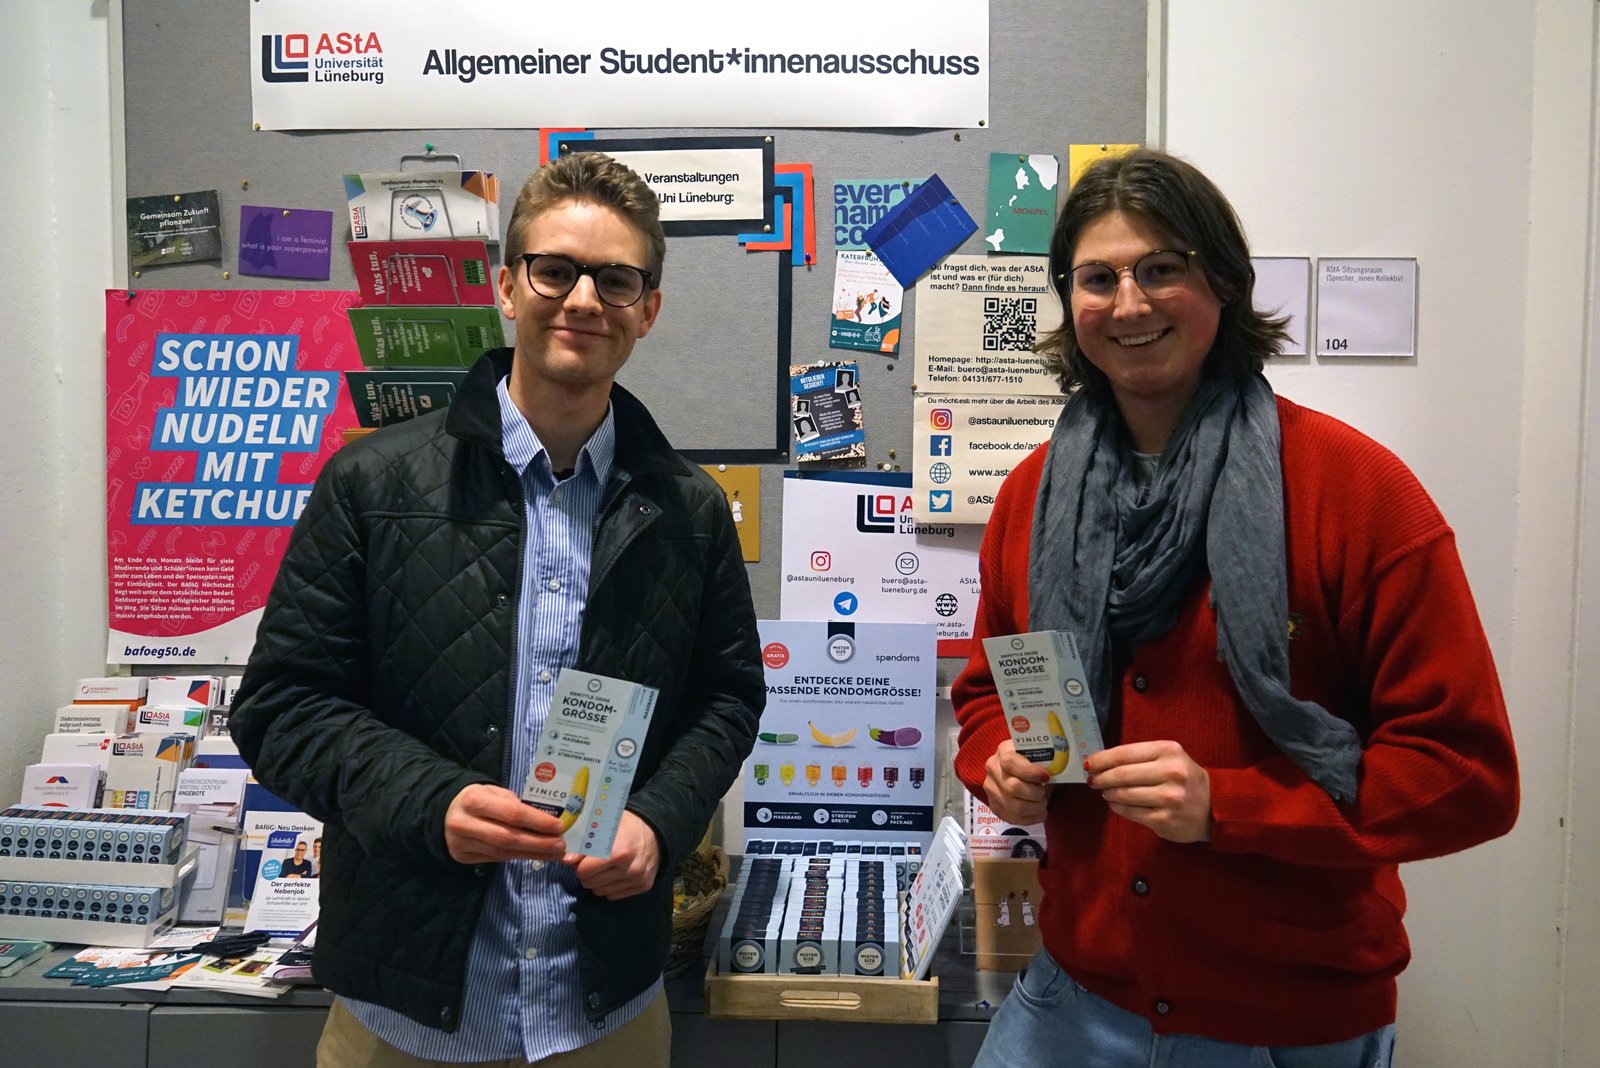 Luis de Spondoms (esquerda) abre o distribuidor gratuito de preservativos juntamente com Max da AStA da Universidade de Leuphana de Lüneburg (direita).